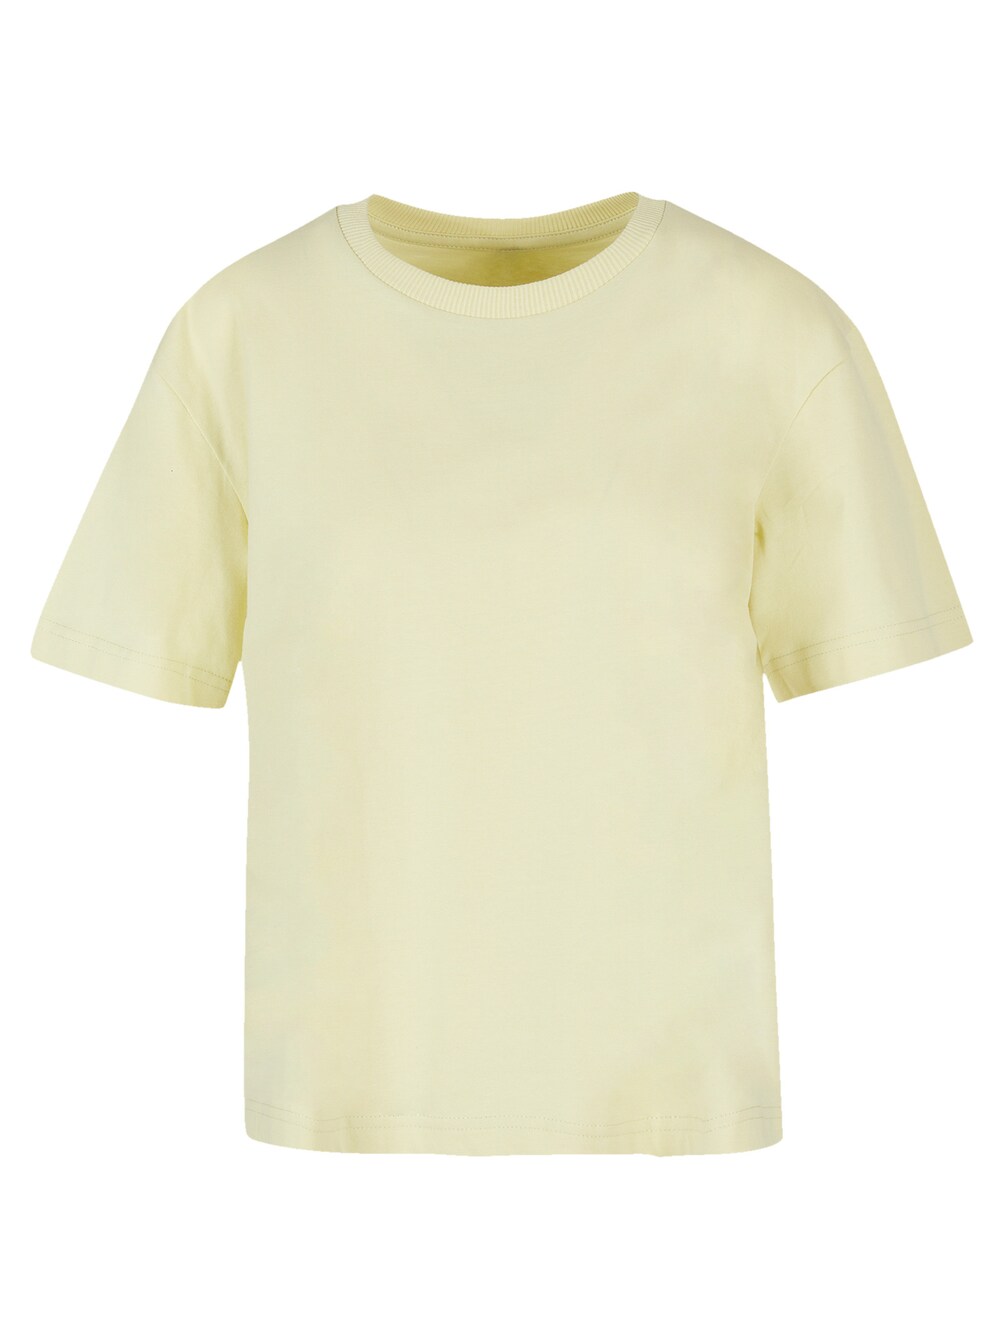 цена Рубашка F4Nt4Stic, желтый/пастельно-желтый